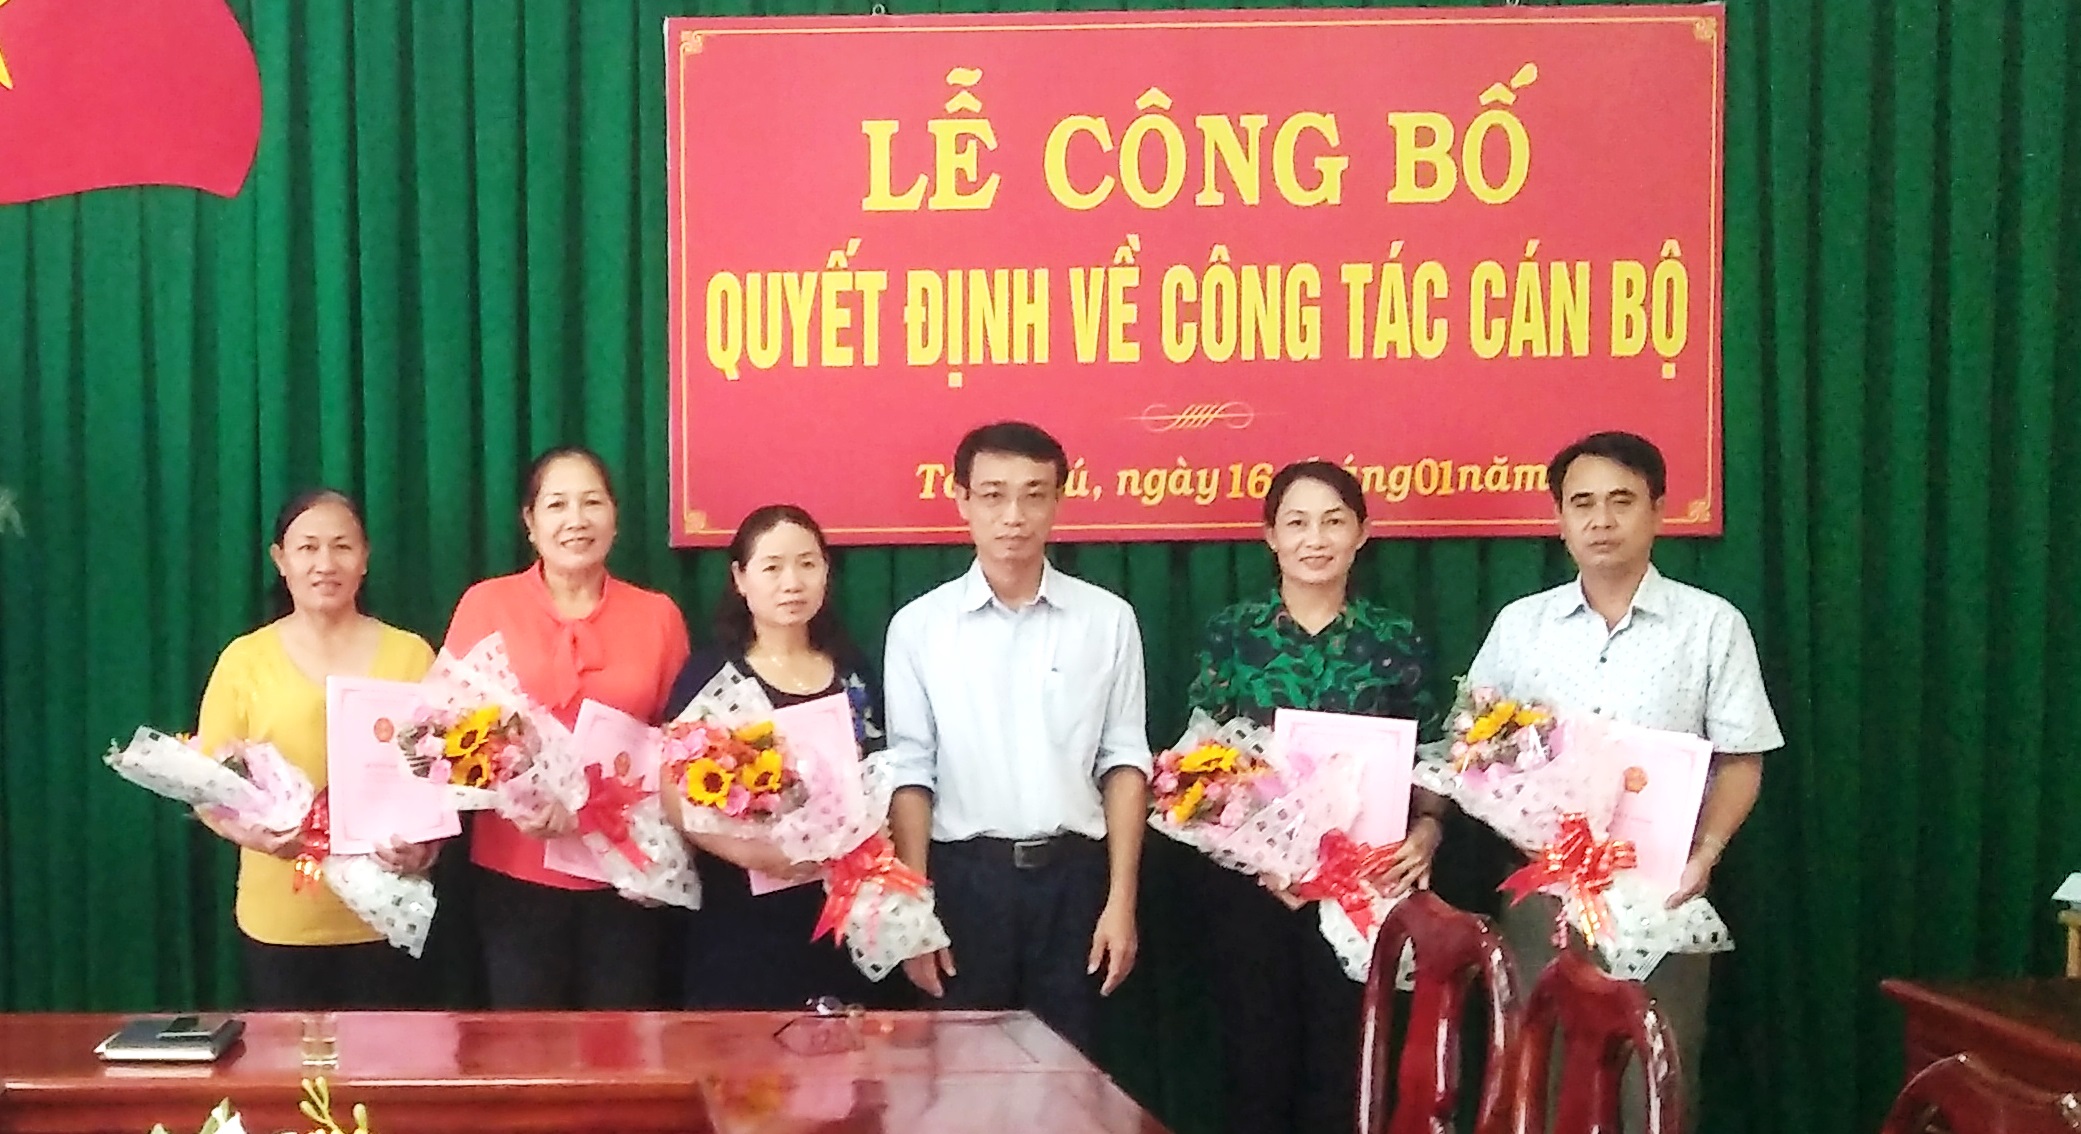 Phó chủ tịch UBND huyện Nguyễn Hữu Ký trao quyết định bổ nhiệm cho các cán bộ quản lý giáo dục.jpg